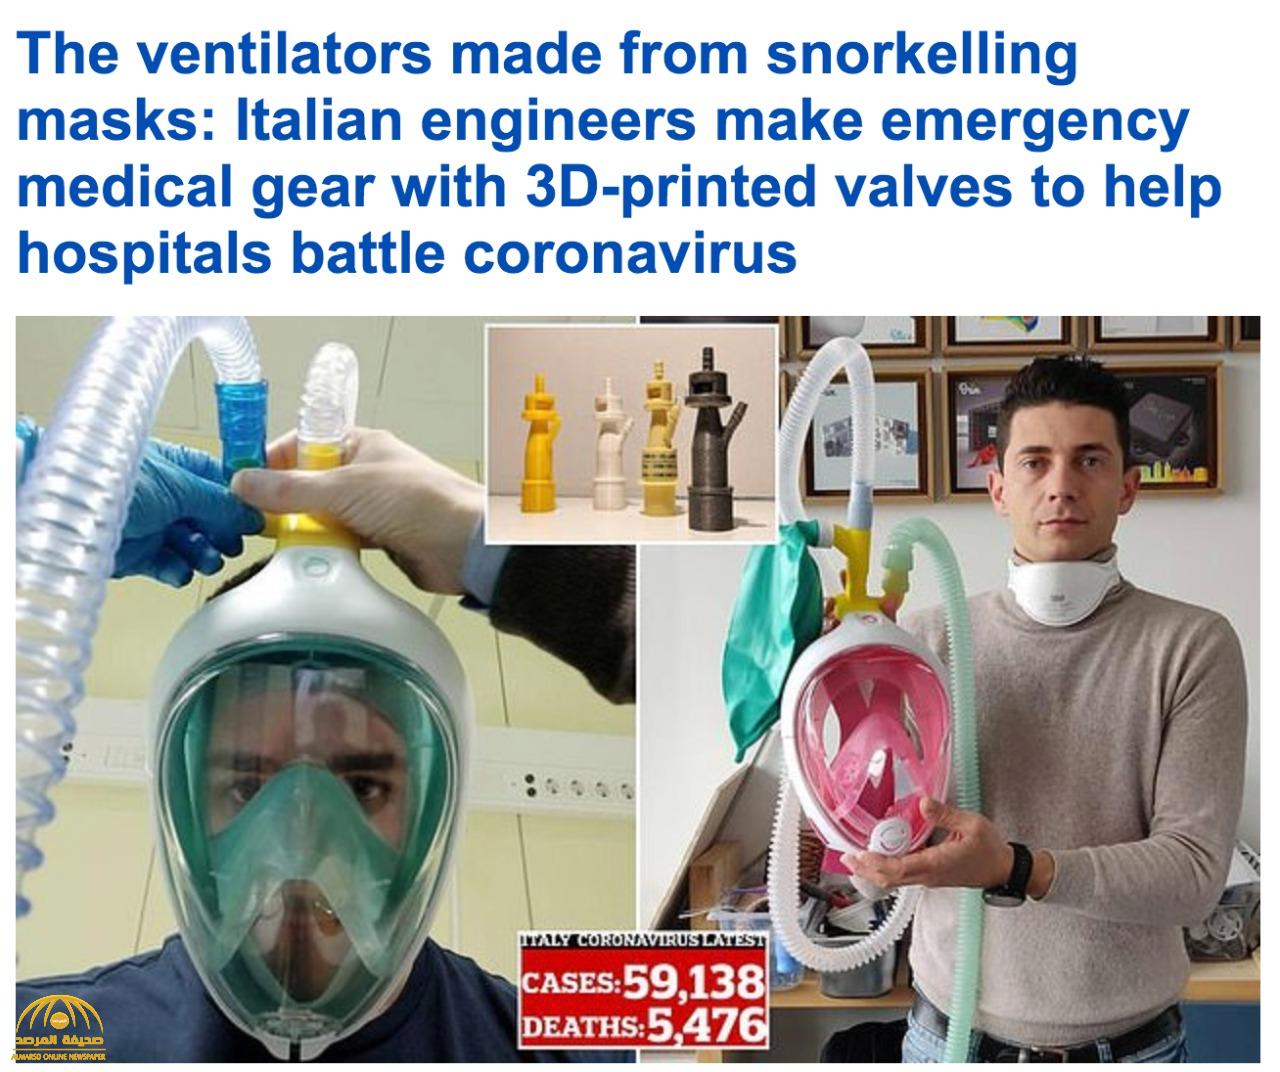 شاهد : مهندسون إيطاليون يصنعون أقنعة بصمامات ثلاثية الأبعاد لتقديمها للأطباء لمكافحة كورونا!